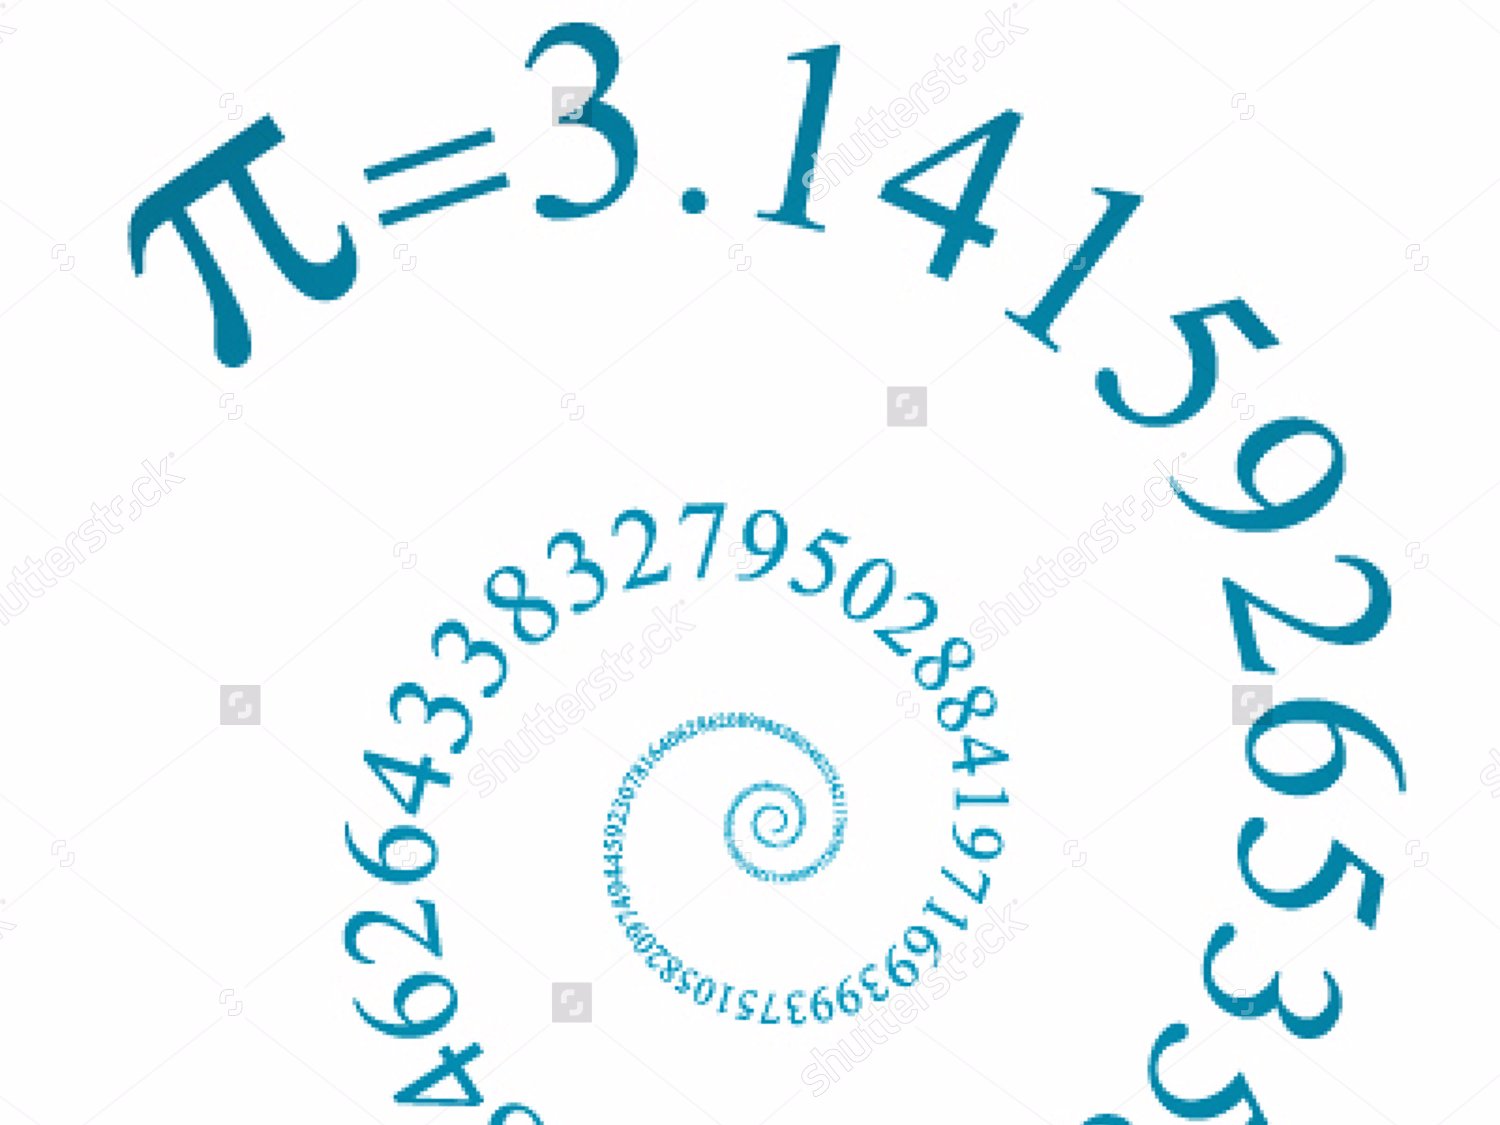 pi calculator math